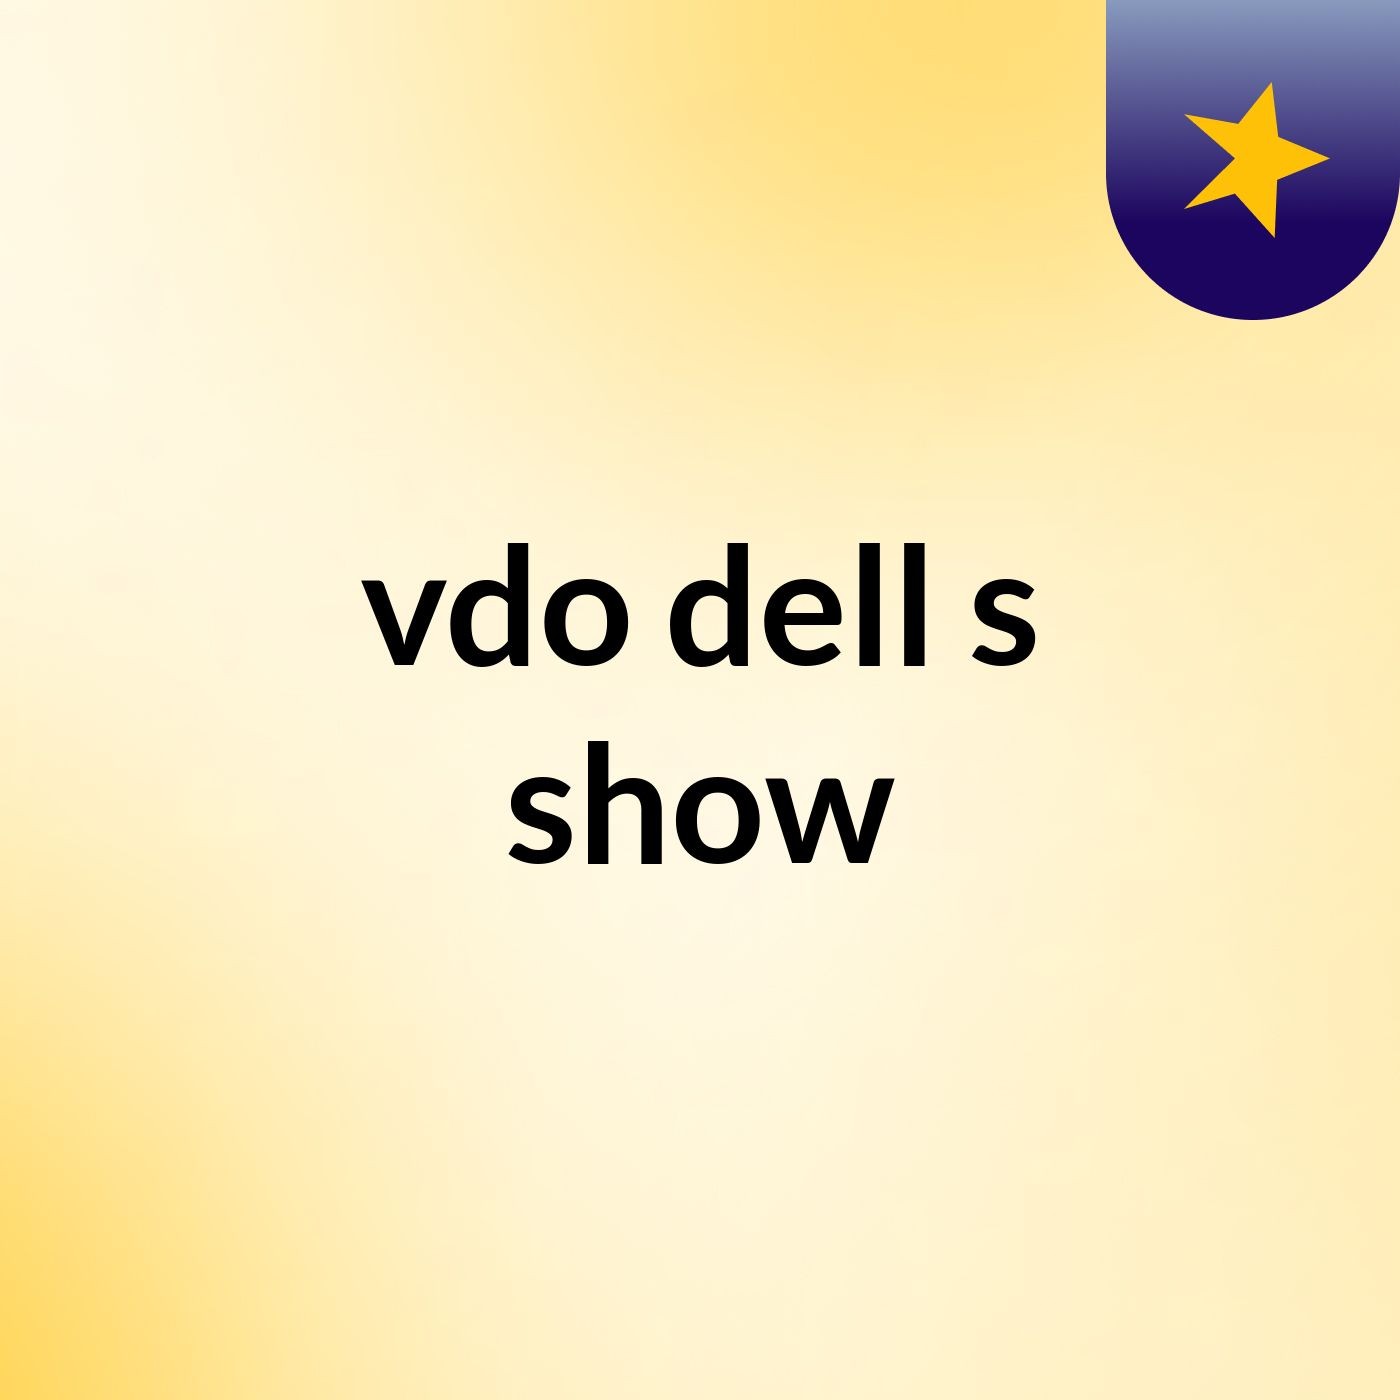 vdo dell's show